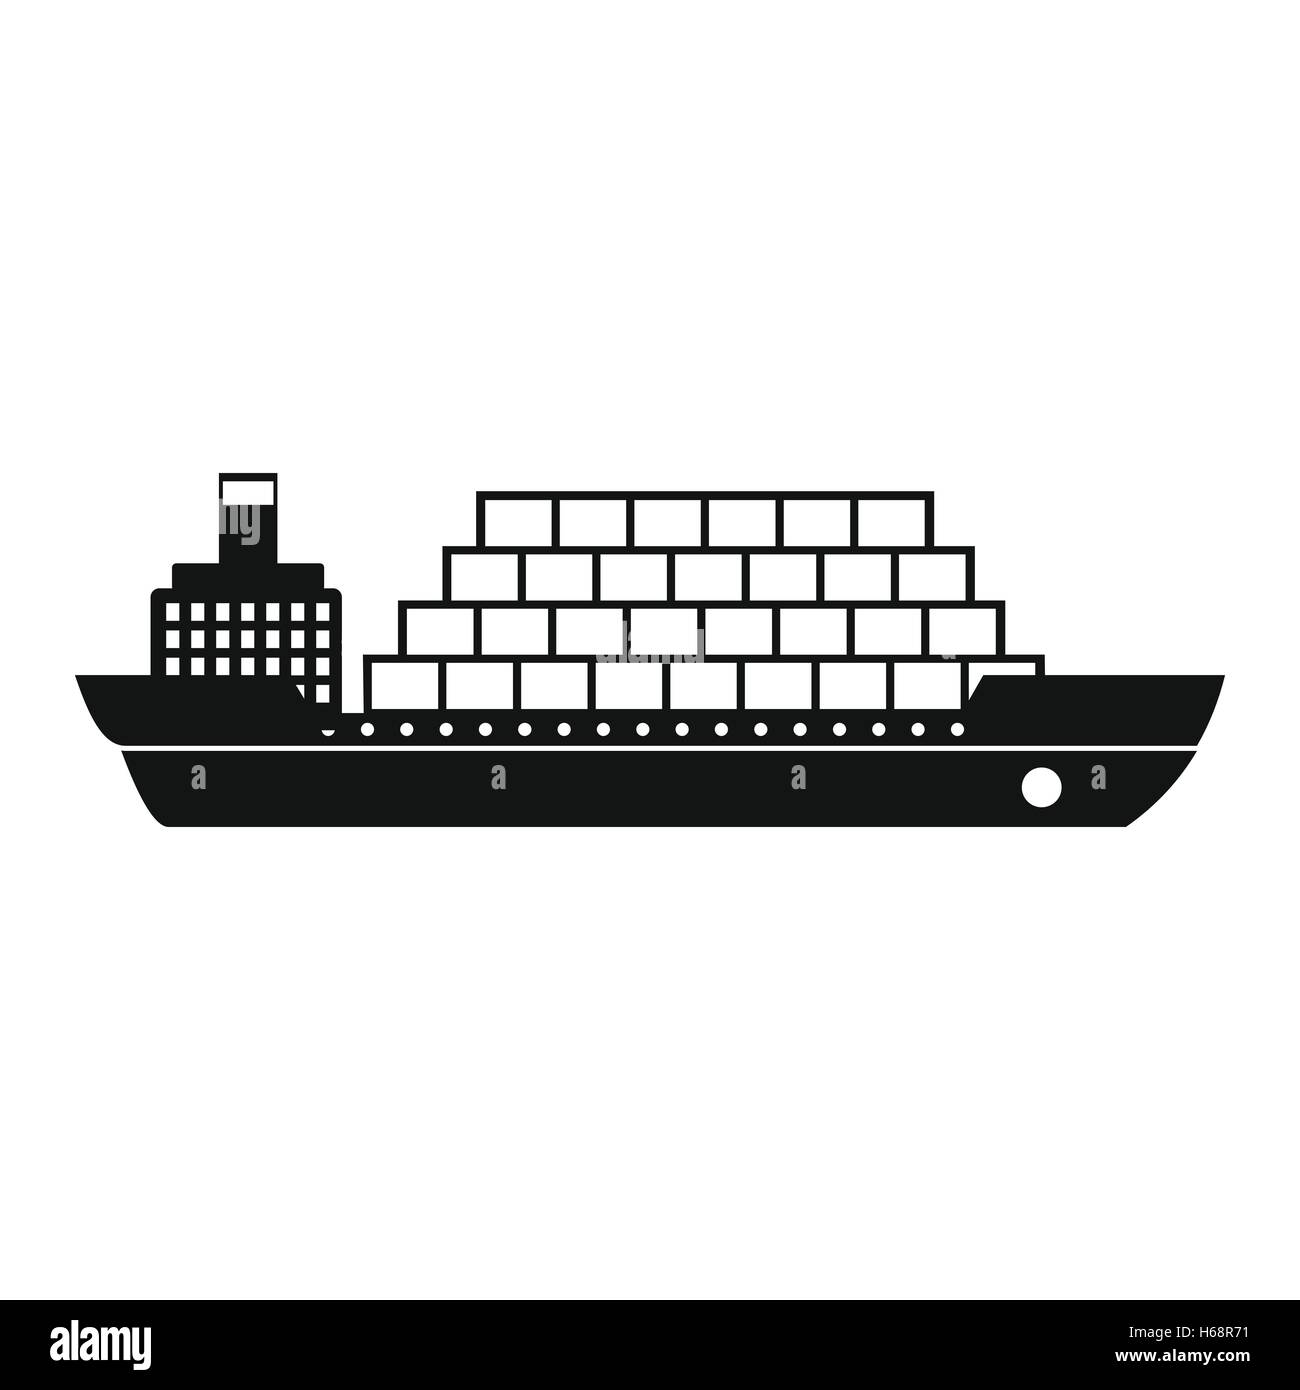 Cargo ship flat black simple icon Stock Vector